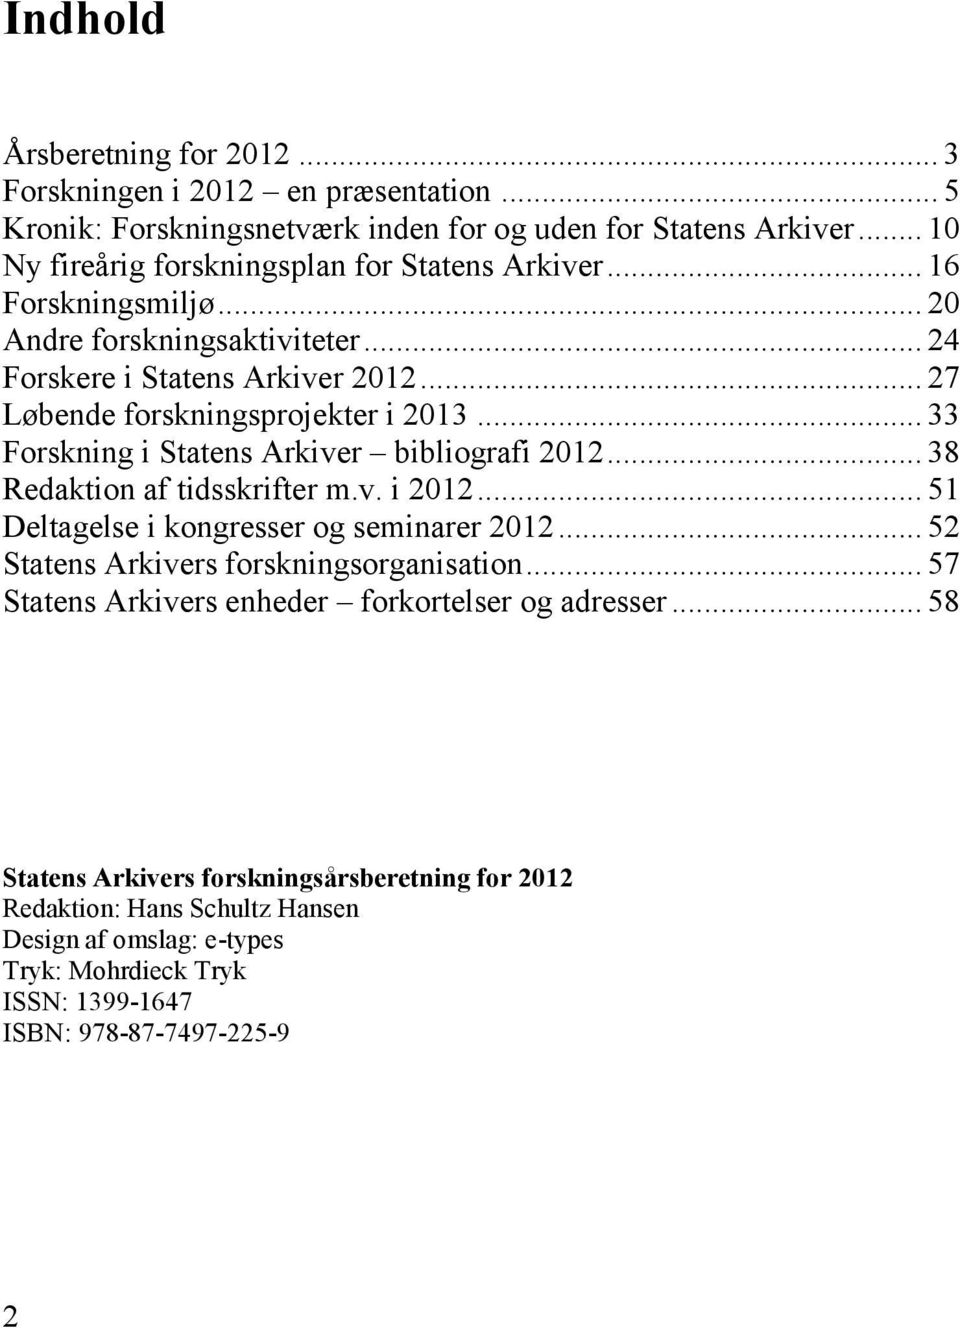 .. 33 Forskning i Statens Arkiver bibliografi 2012... 38 Redaktion af tidsskrifter m.v. i 2012... 51 Deltagelse i kongresser og seminarer 2012... 52 Statens Arkivers forskningsorganisation.